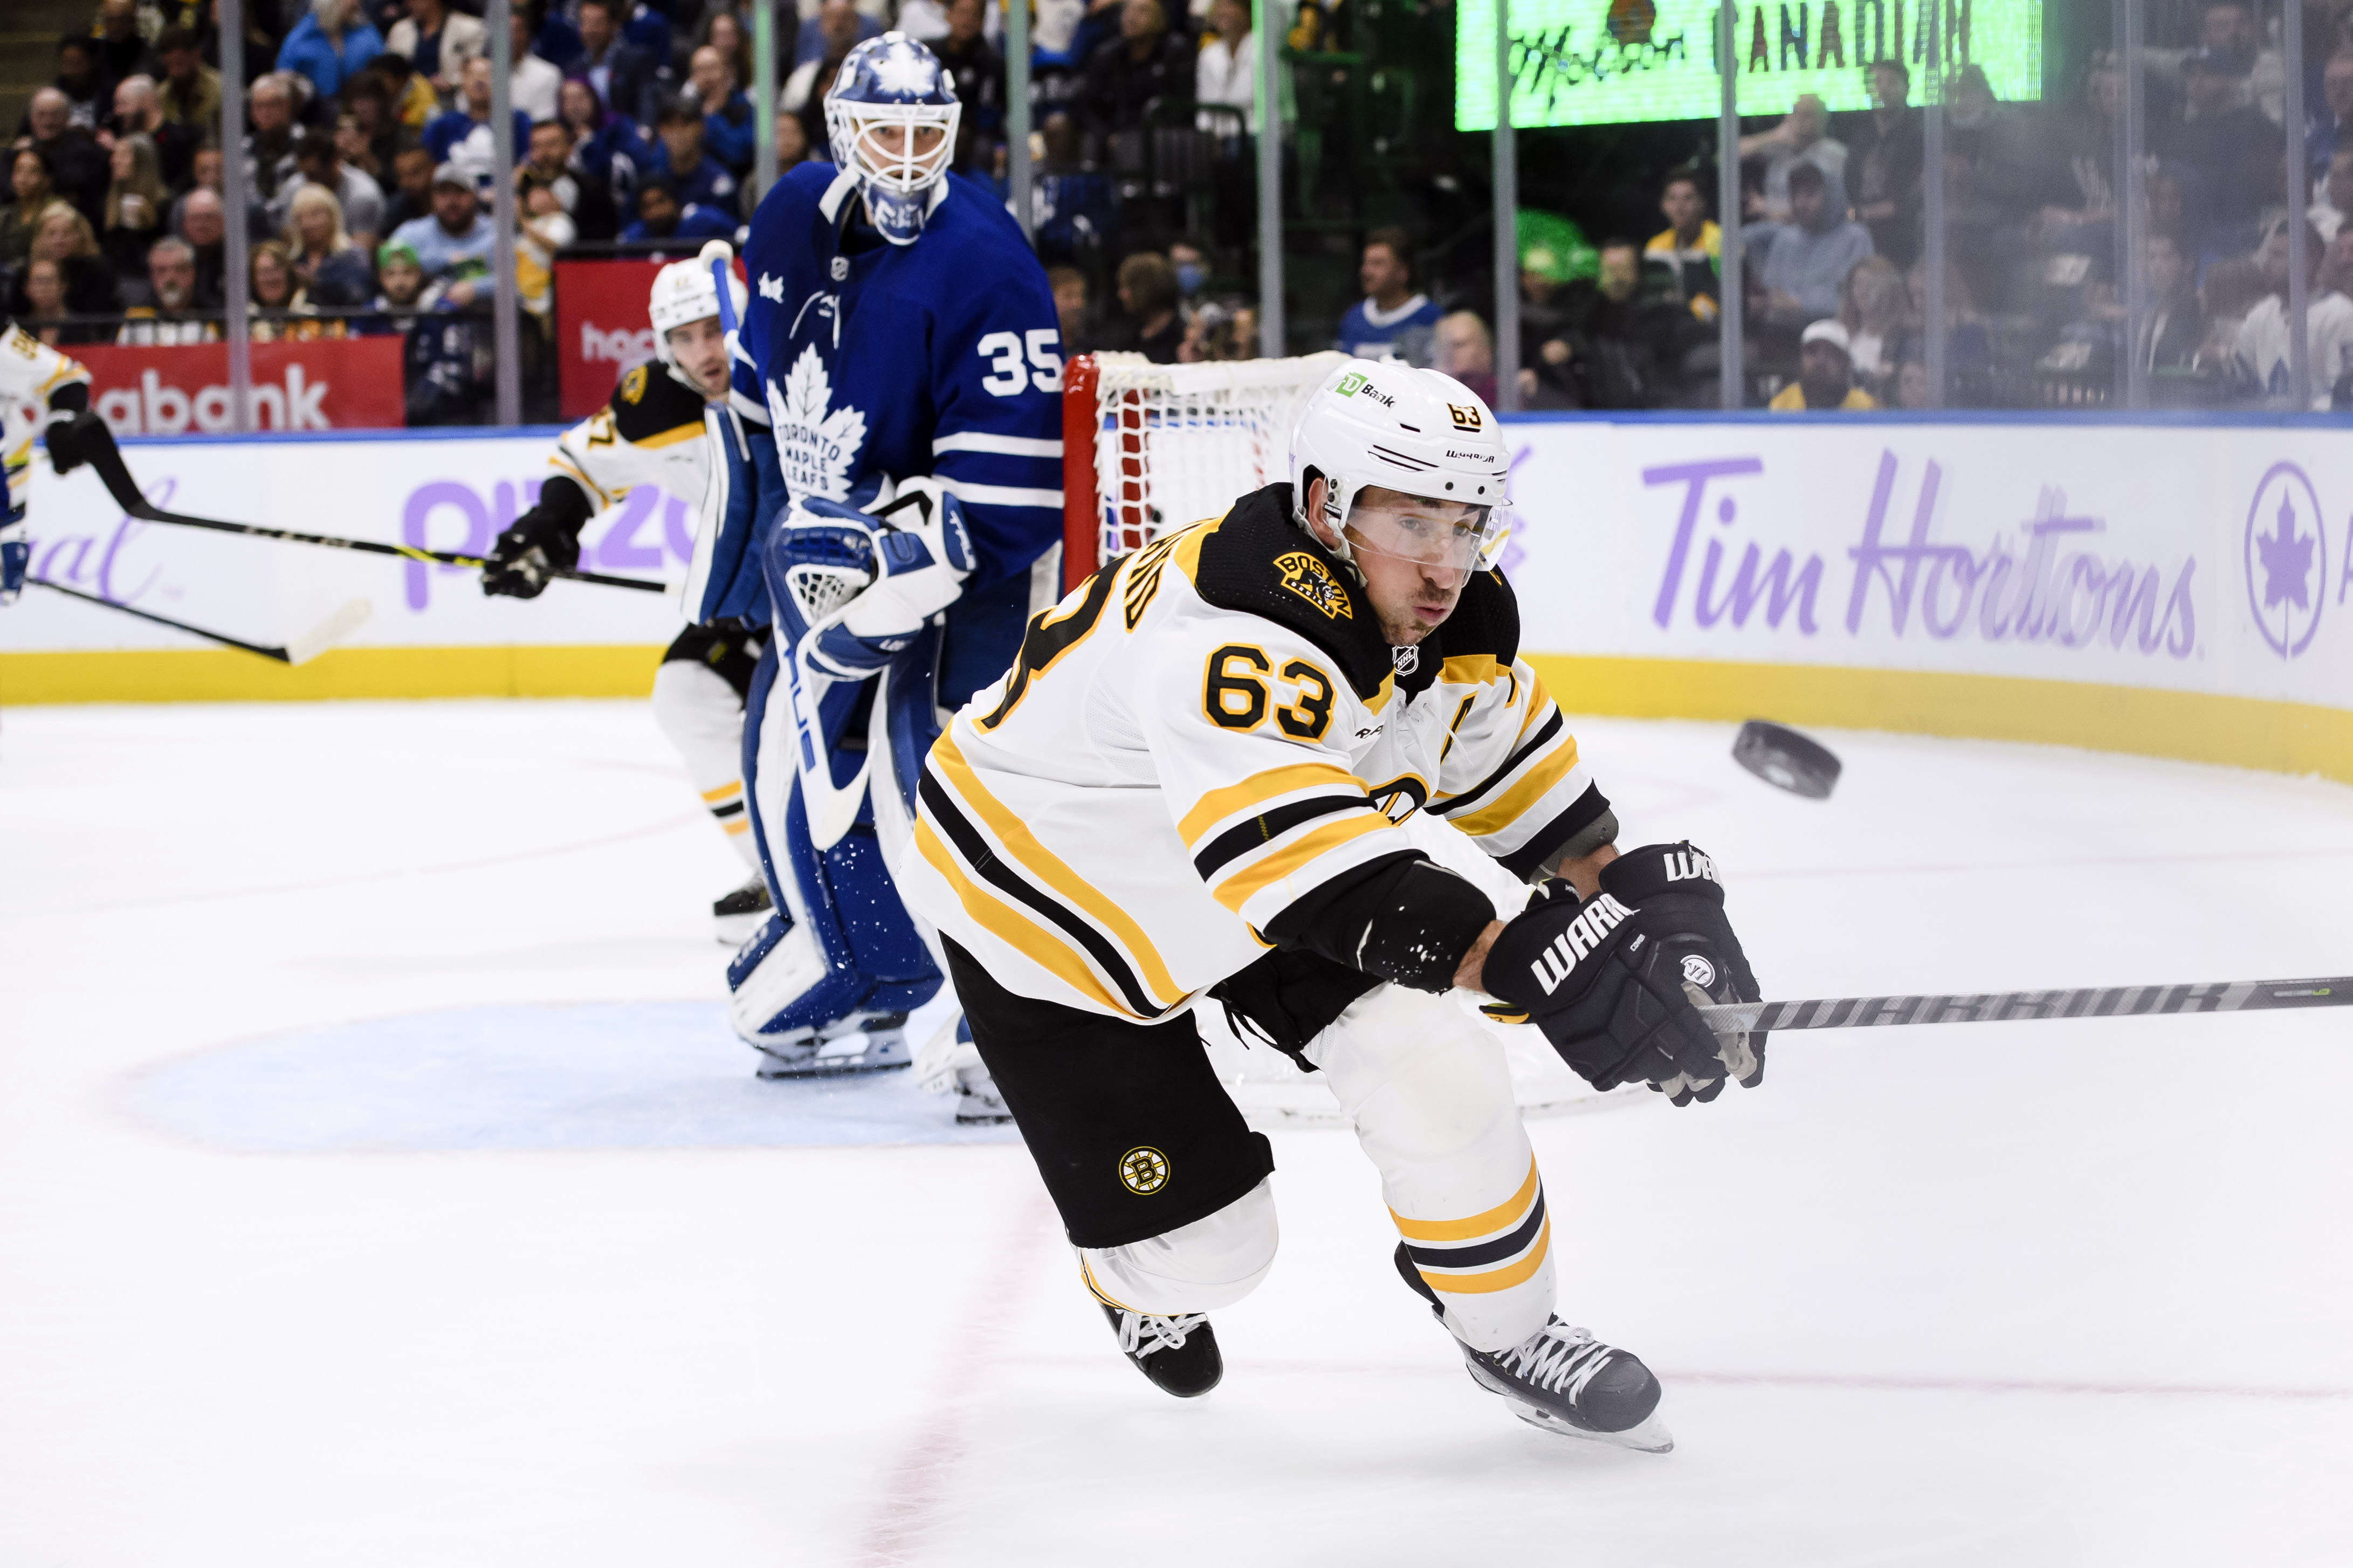 Auston Matthews takes unconventional path to NHL - The Boston Globe